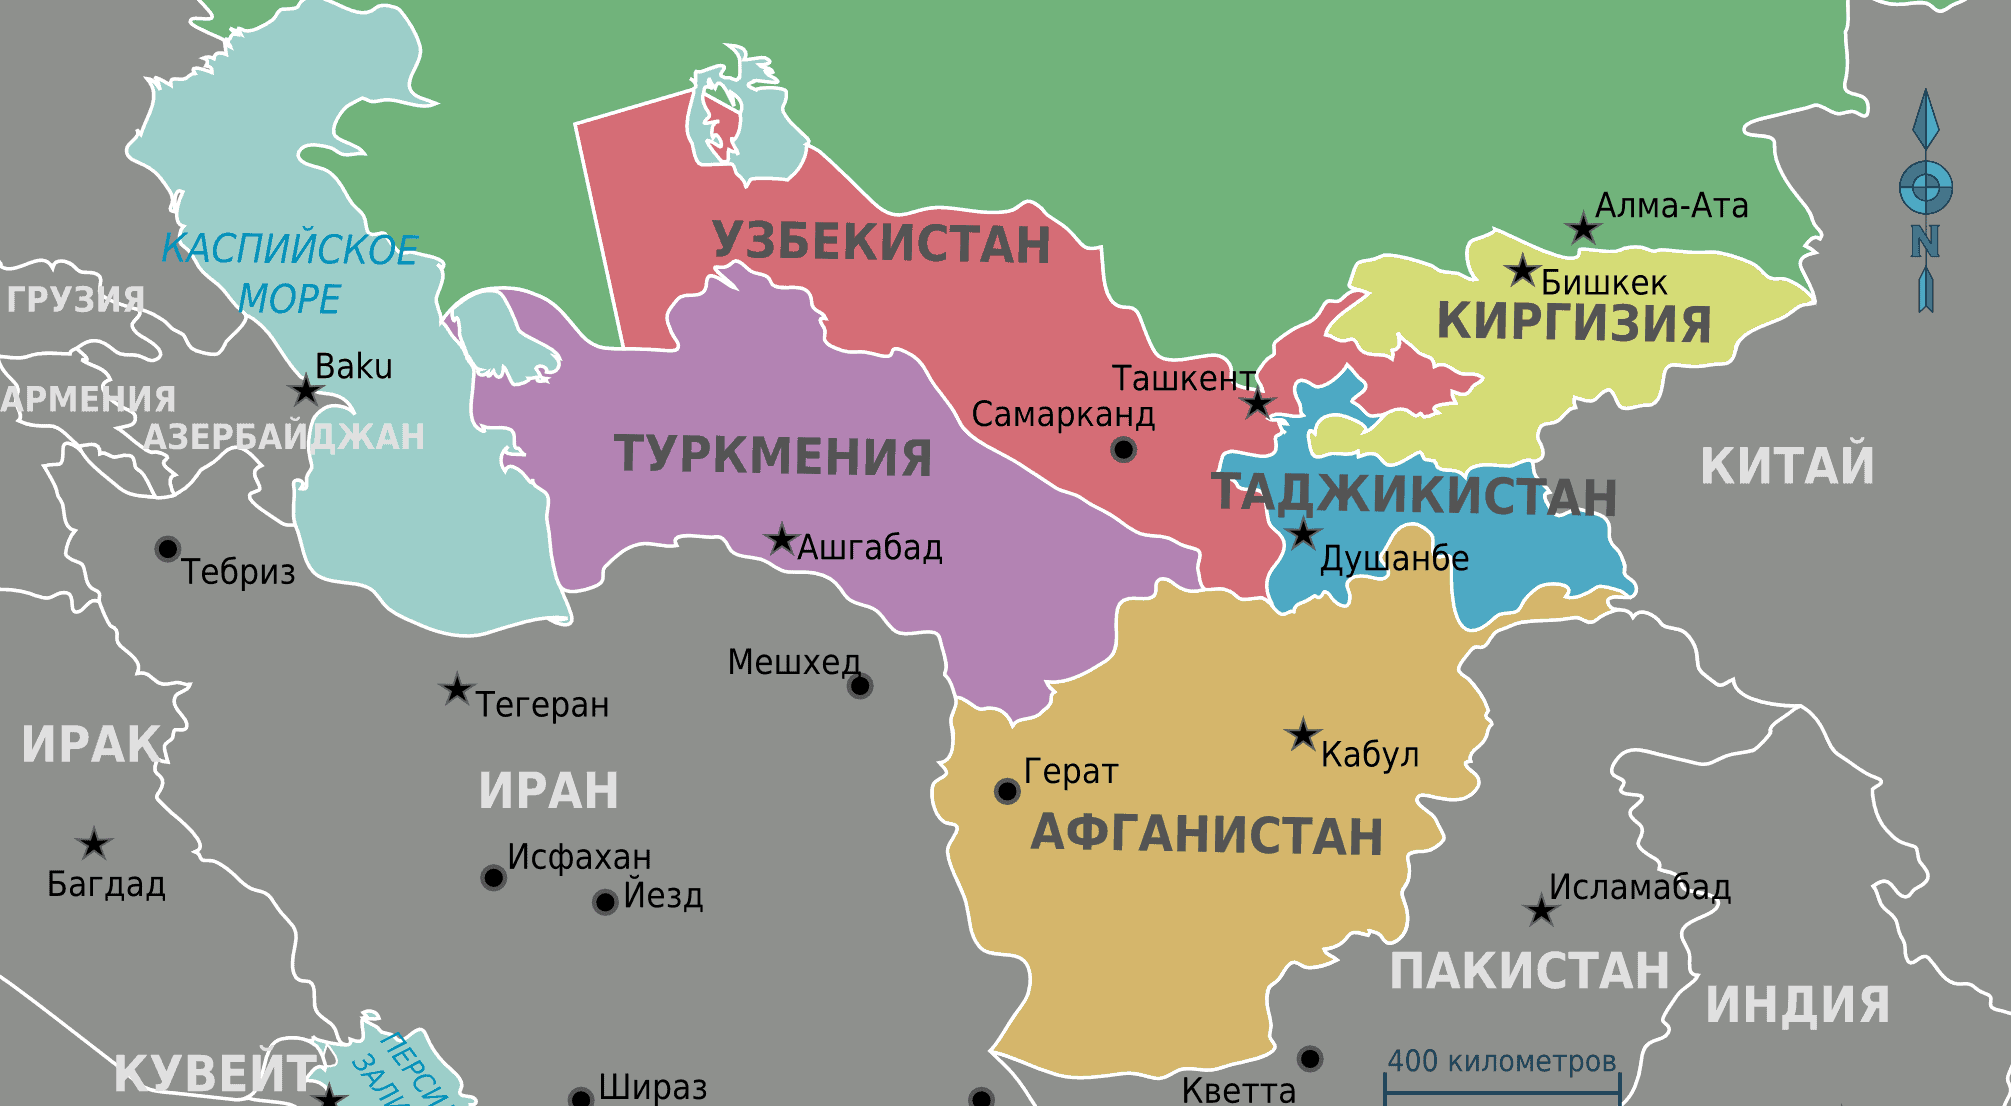 Узбекистан туркмения киргизия таджикистан. Казахстан и Узбекистан на карте. Туркмения и Узбекистан на карте. Узбекистан на карте средней Азии. Страны центральной Азии на карте.